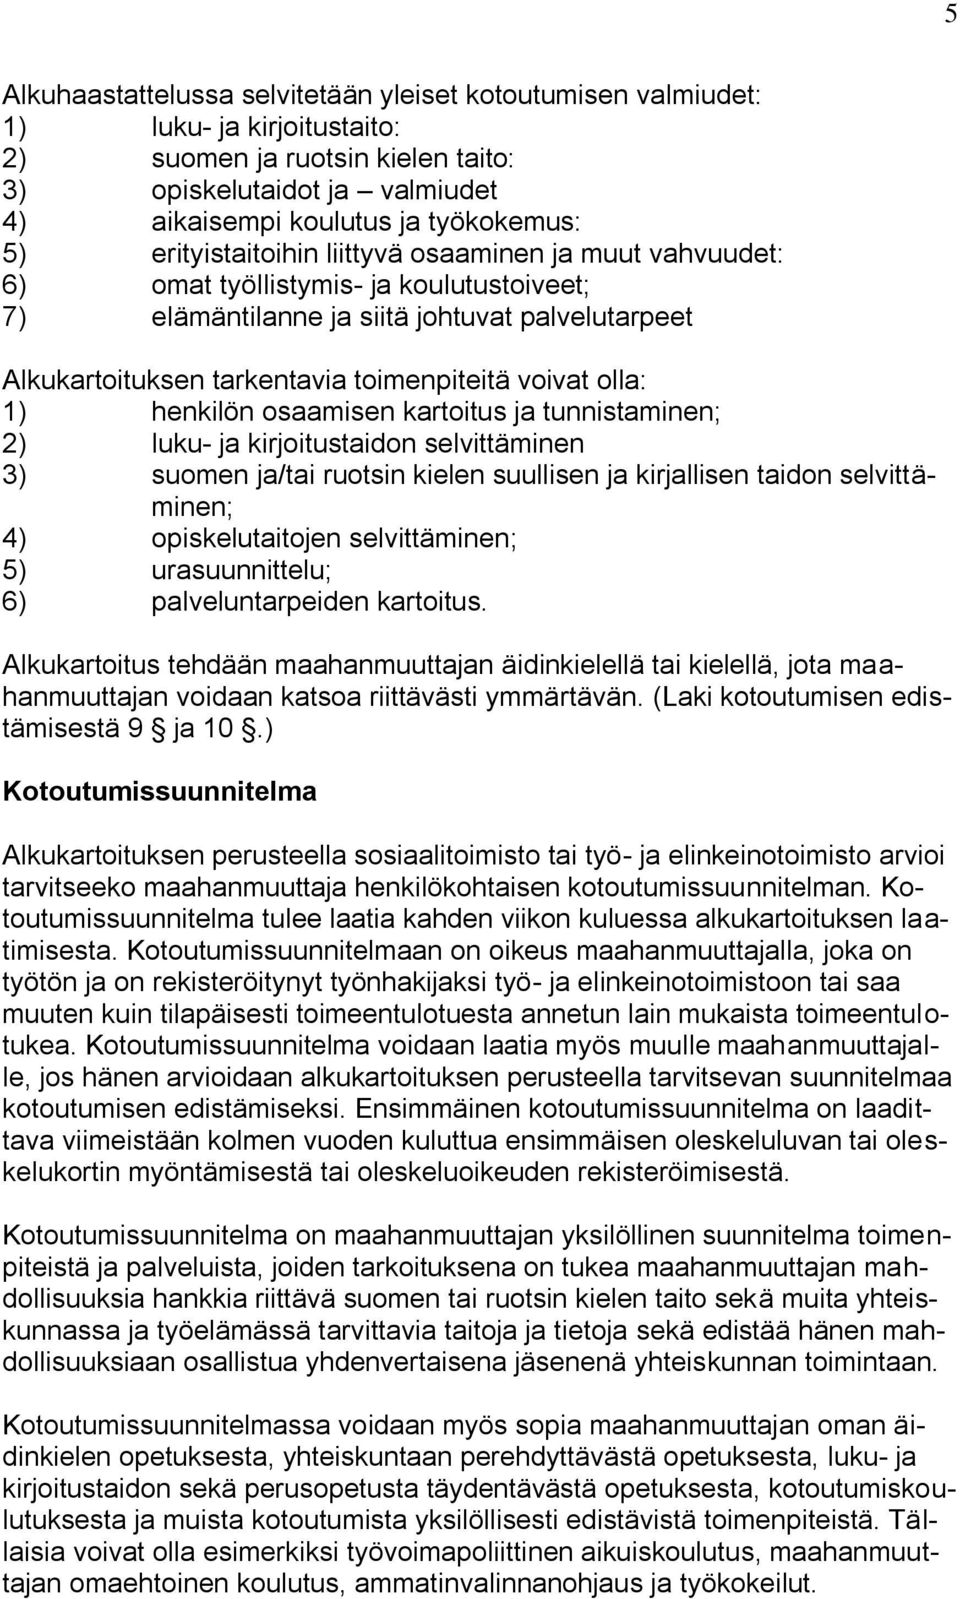 olla: 1) henkilön osaamisen kartoitus ja tunnistaminen; 2) luku- ja kirjoitustaidon selvittäminen 3) suomen ja/tai ruotsin kielen suullisen ja kirjallisen taidon selvittäminen; 4) opiskelutaitojen